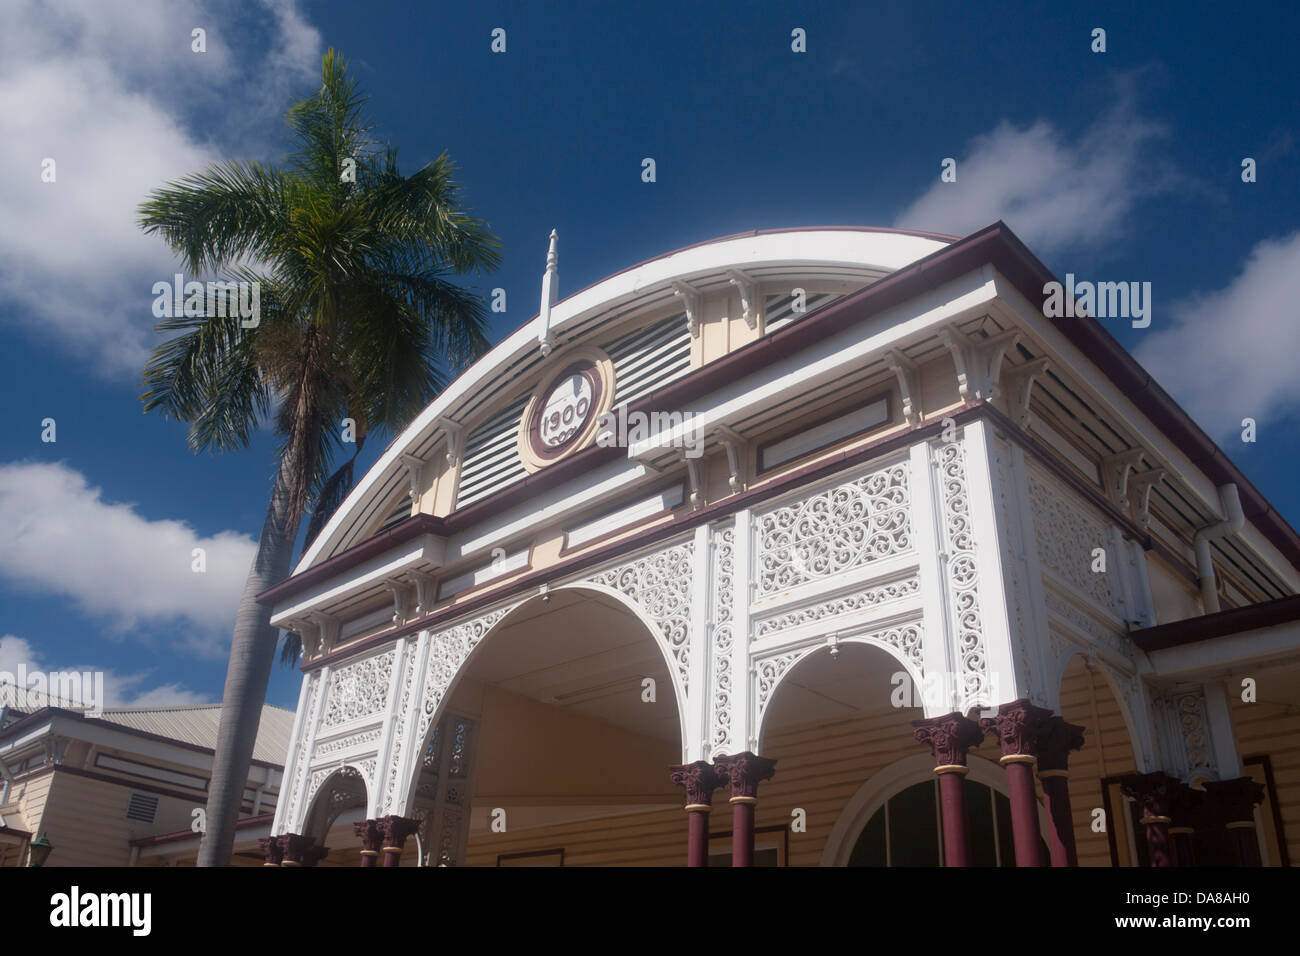 La gare d'émeraude Central Queensland Australie Banque D'Images